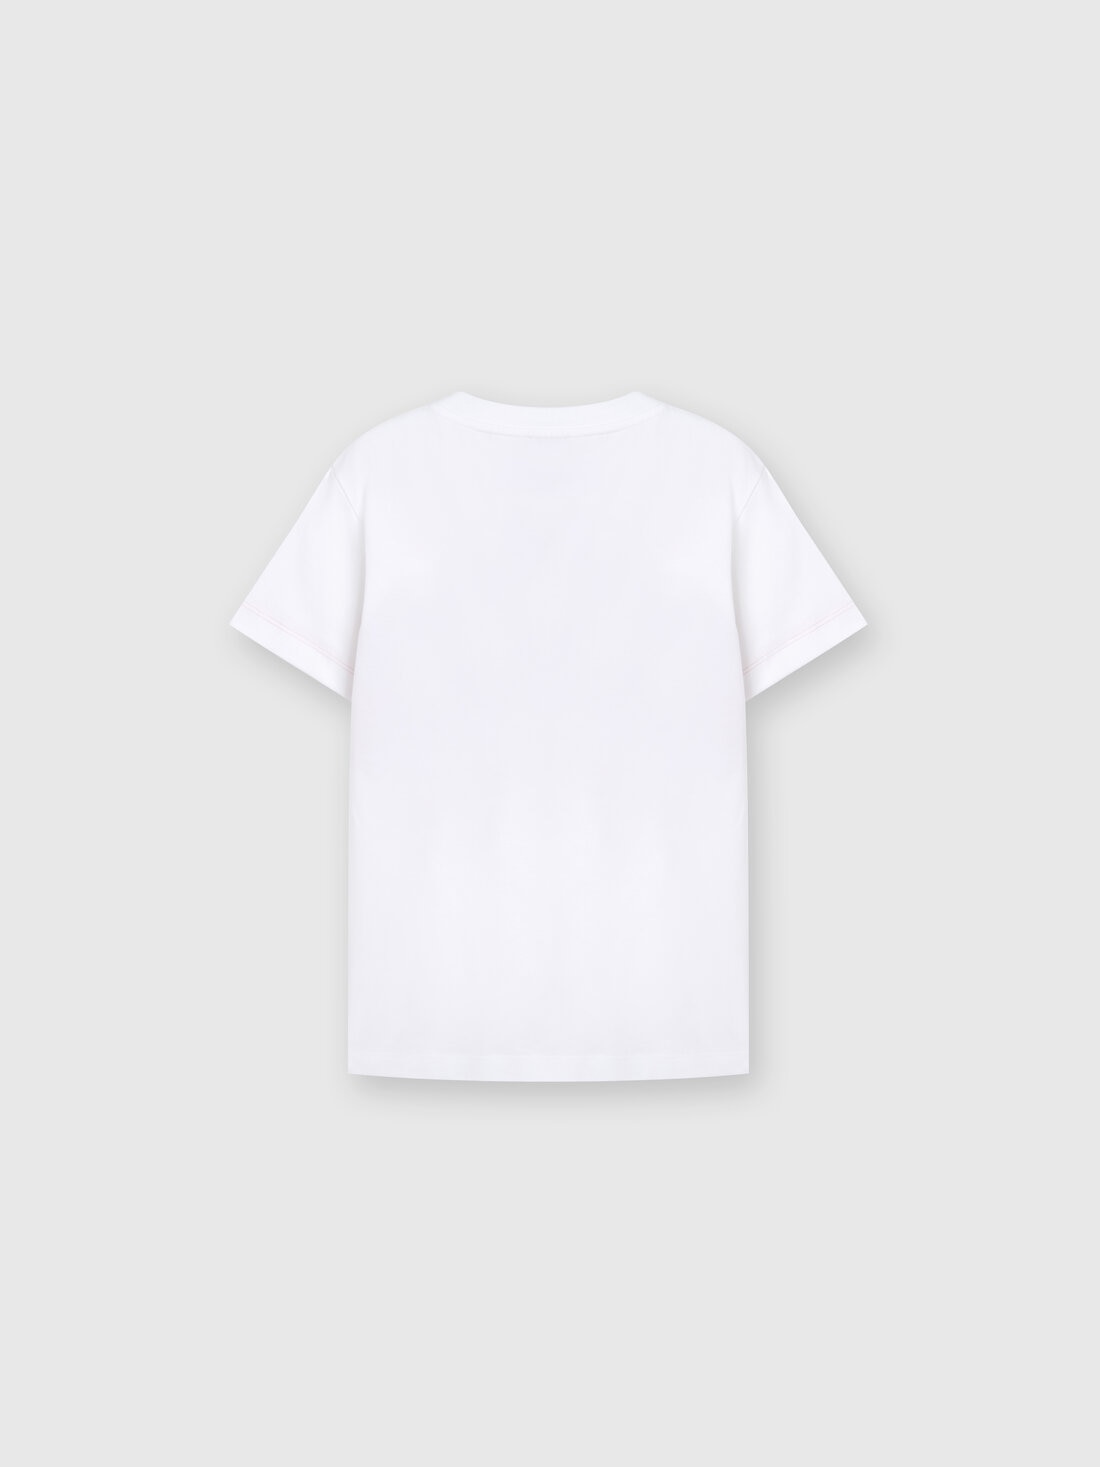 Camiseta en tejido jersey de algodón con inserción a espigas y logotipo, Multicolor  - KS24SL01BV00FVS019I - 1